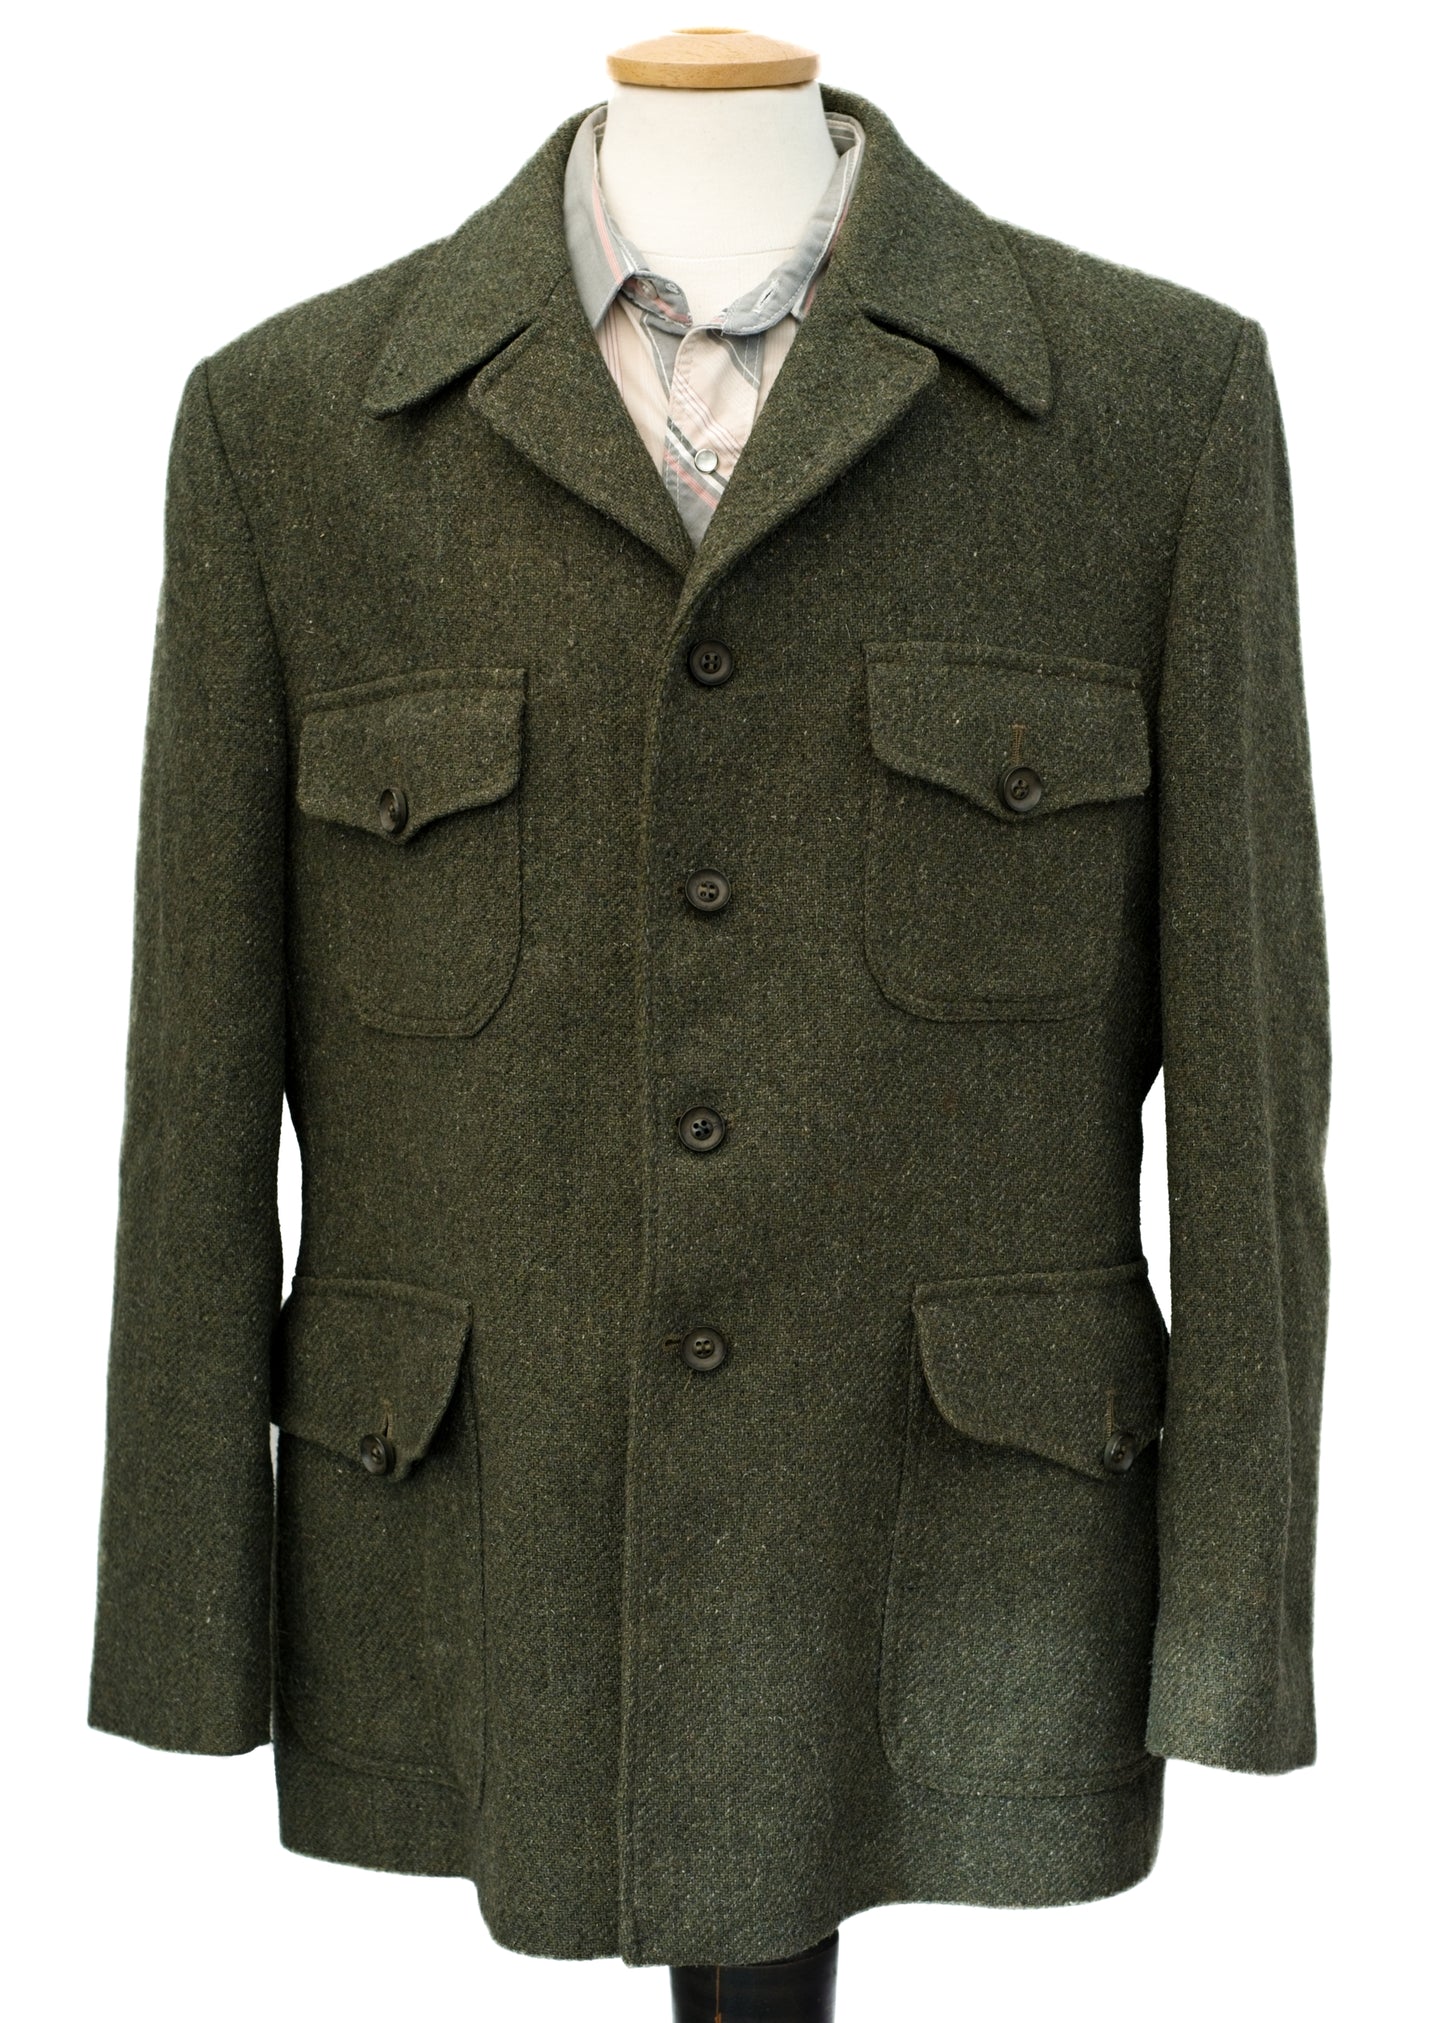 Vintage Green Tweed Half Norfolk Keeper's Jacket • Dhobi